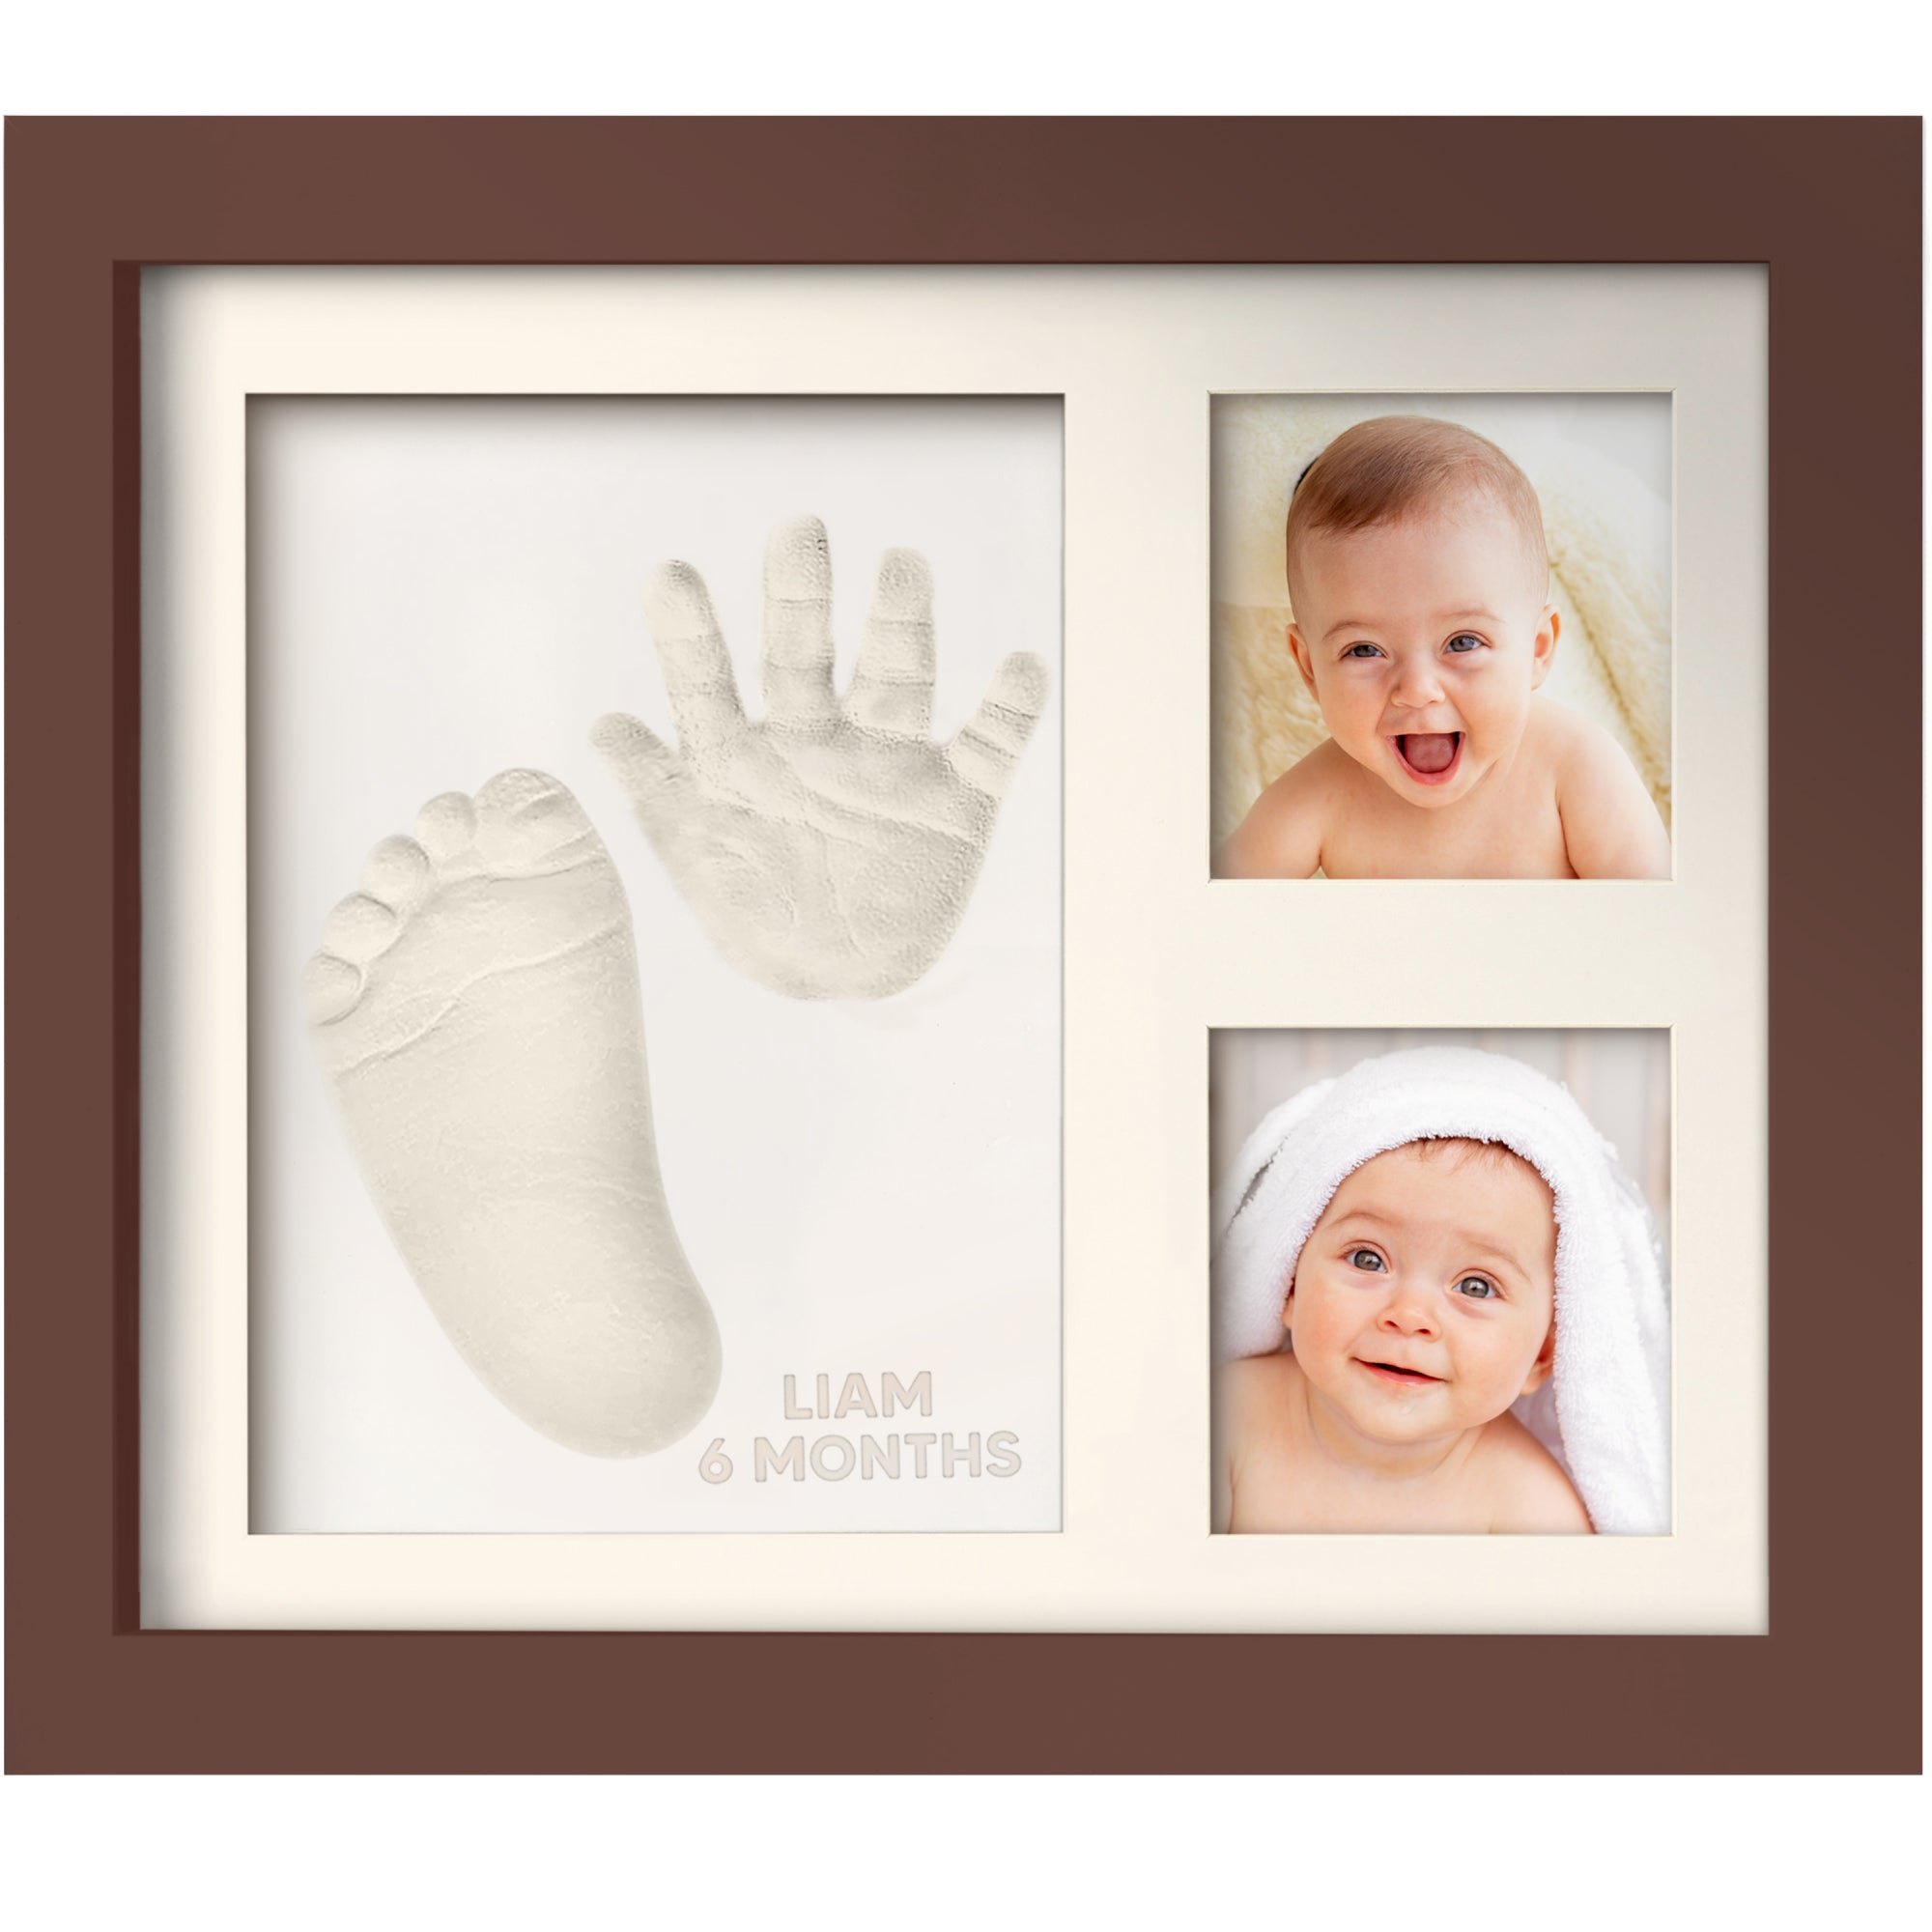 Baby Footprint Ink Pad, Lasting Memories Baby Ink Pad With Paper